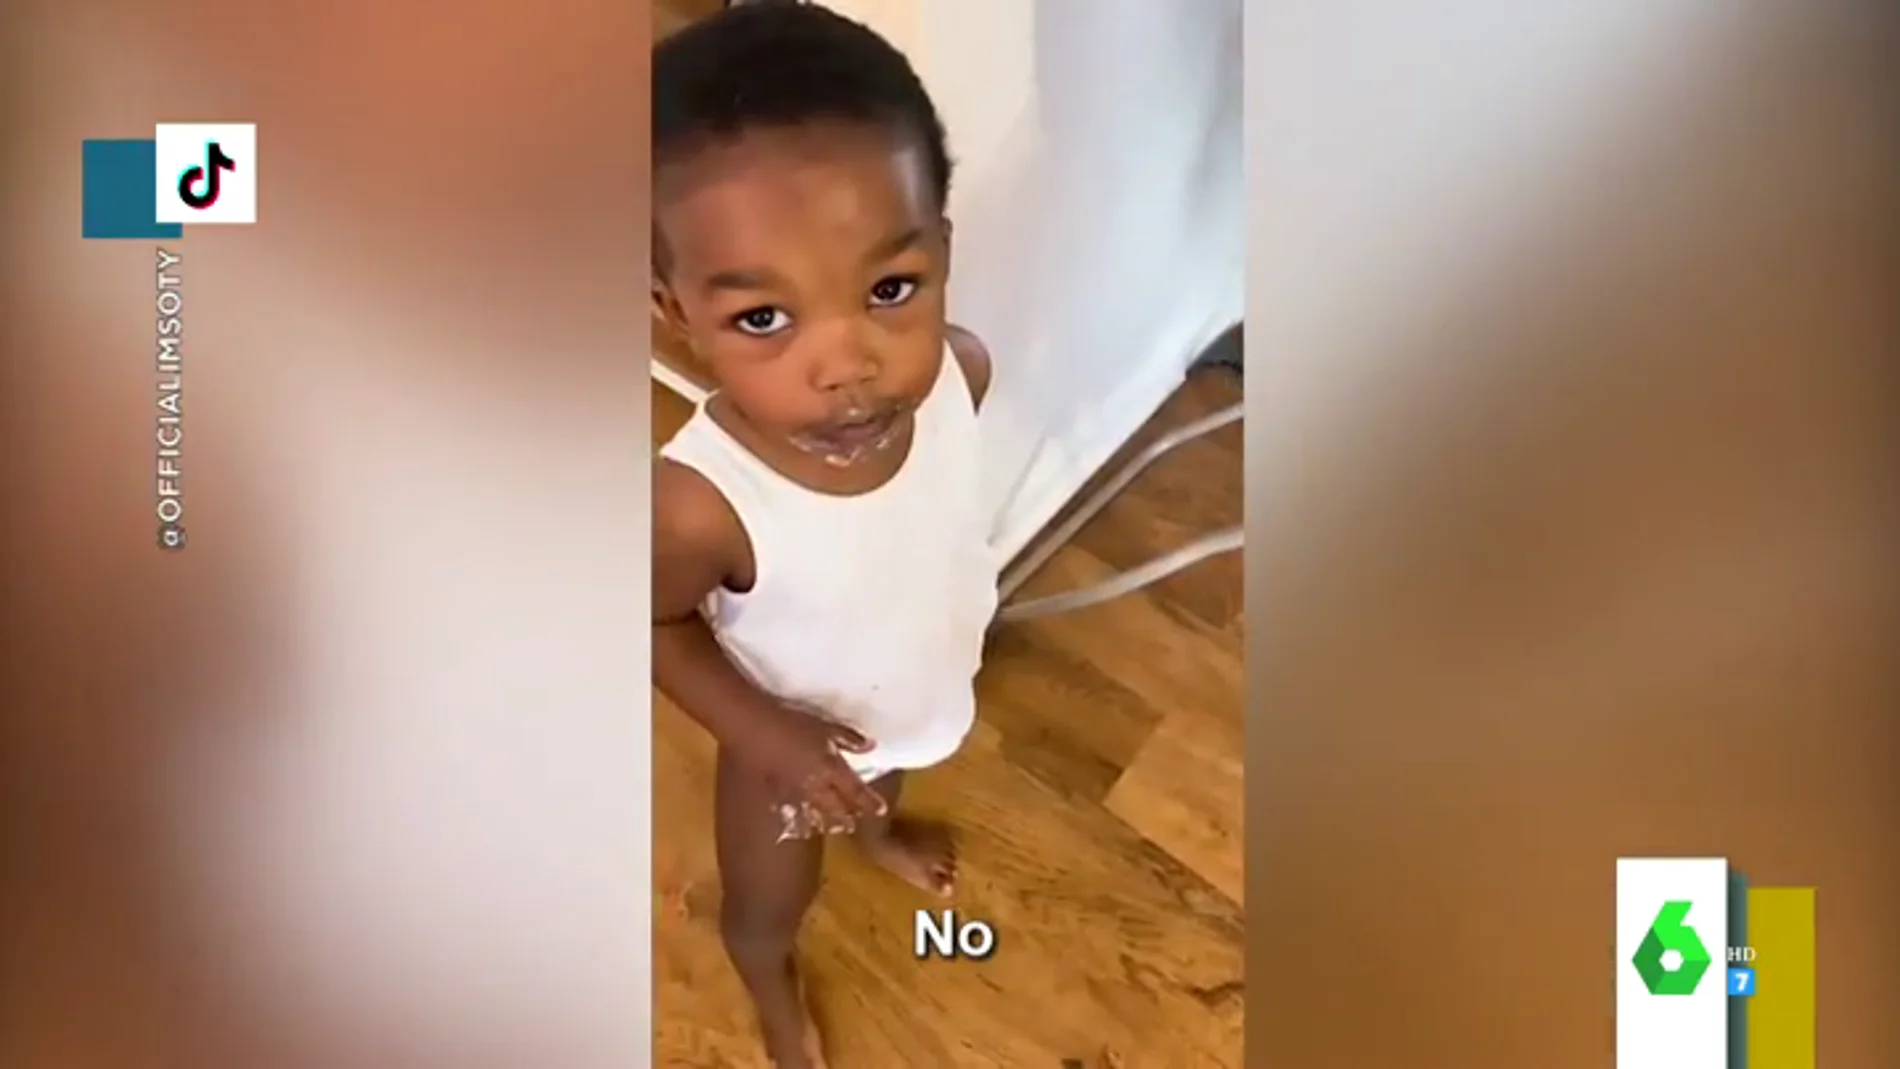 El divertido vídeo viral de un niño que niega haberse comido unos cupcakes... con la boca llena de crema